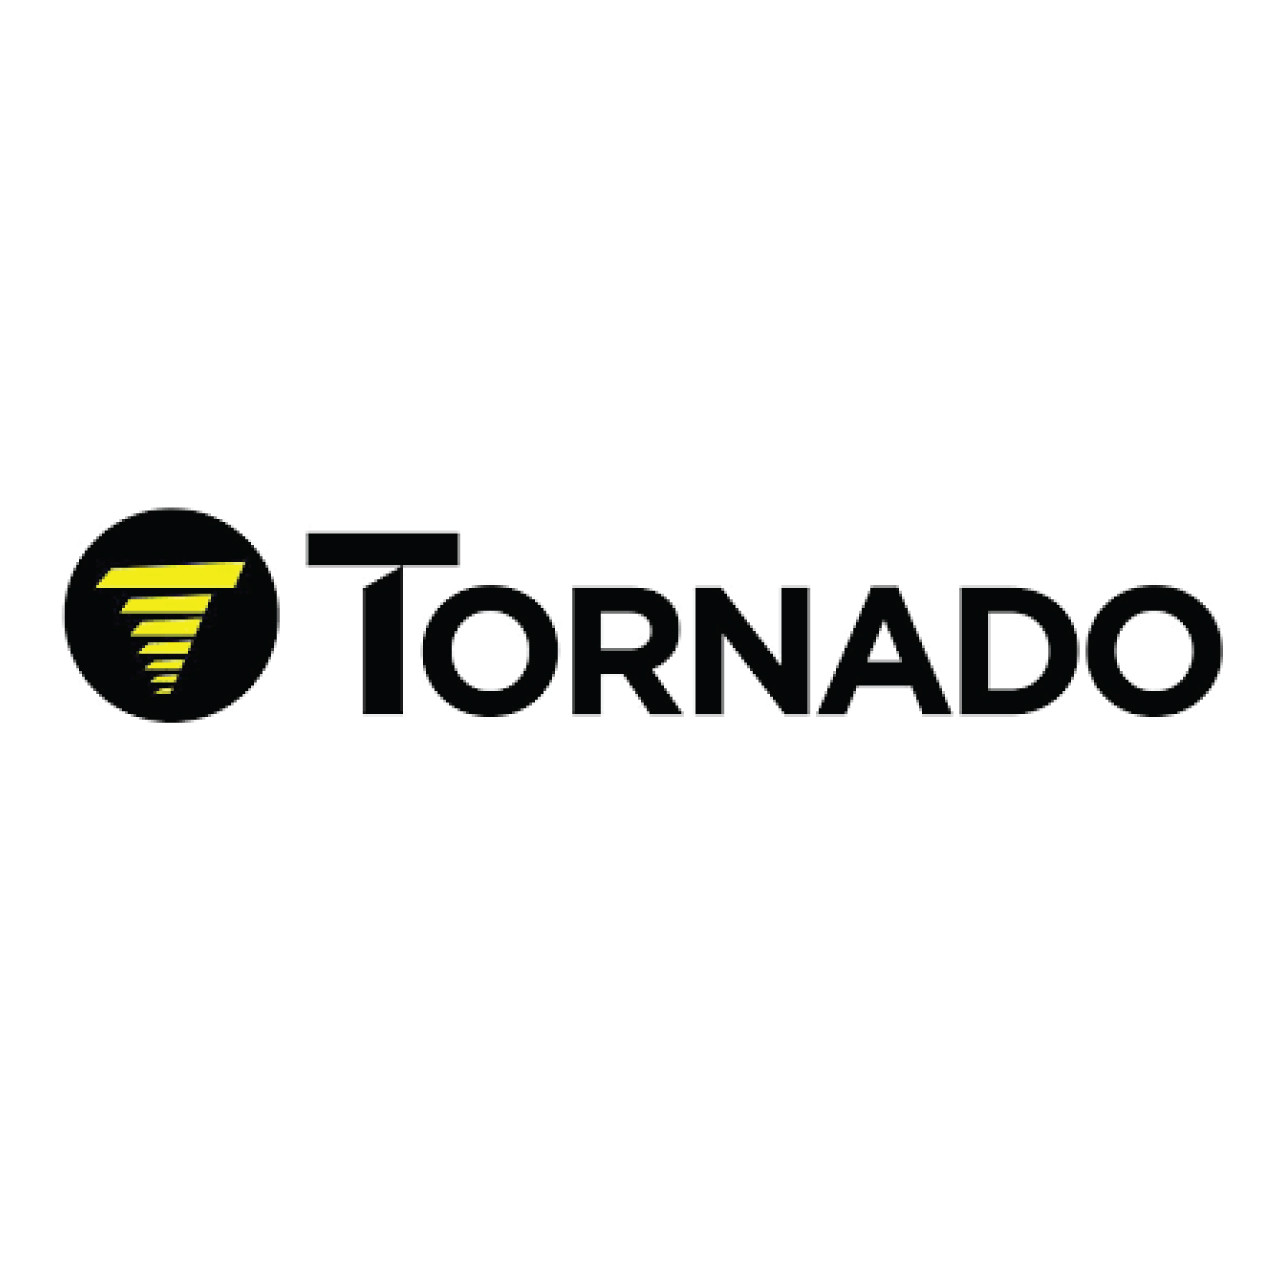 02-4199-1000, Tornado 02-4199-1000, Tornado Box, Pump 121MM X 95MM X 61MM, Tornado parts